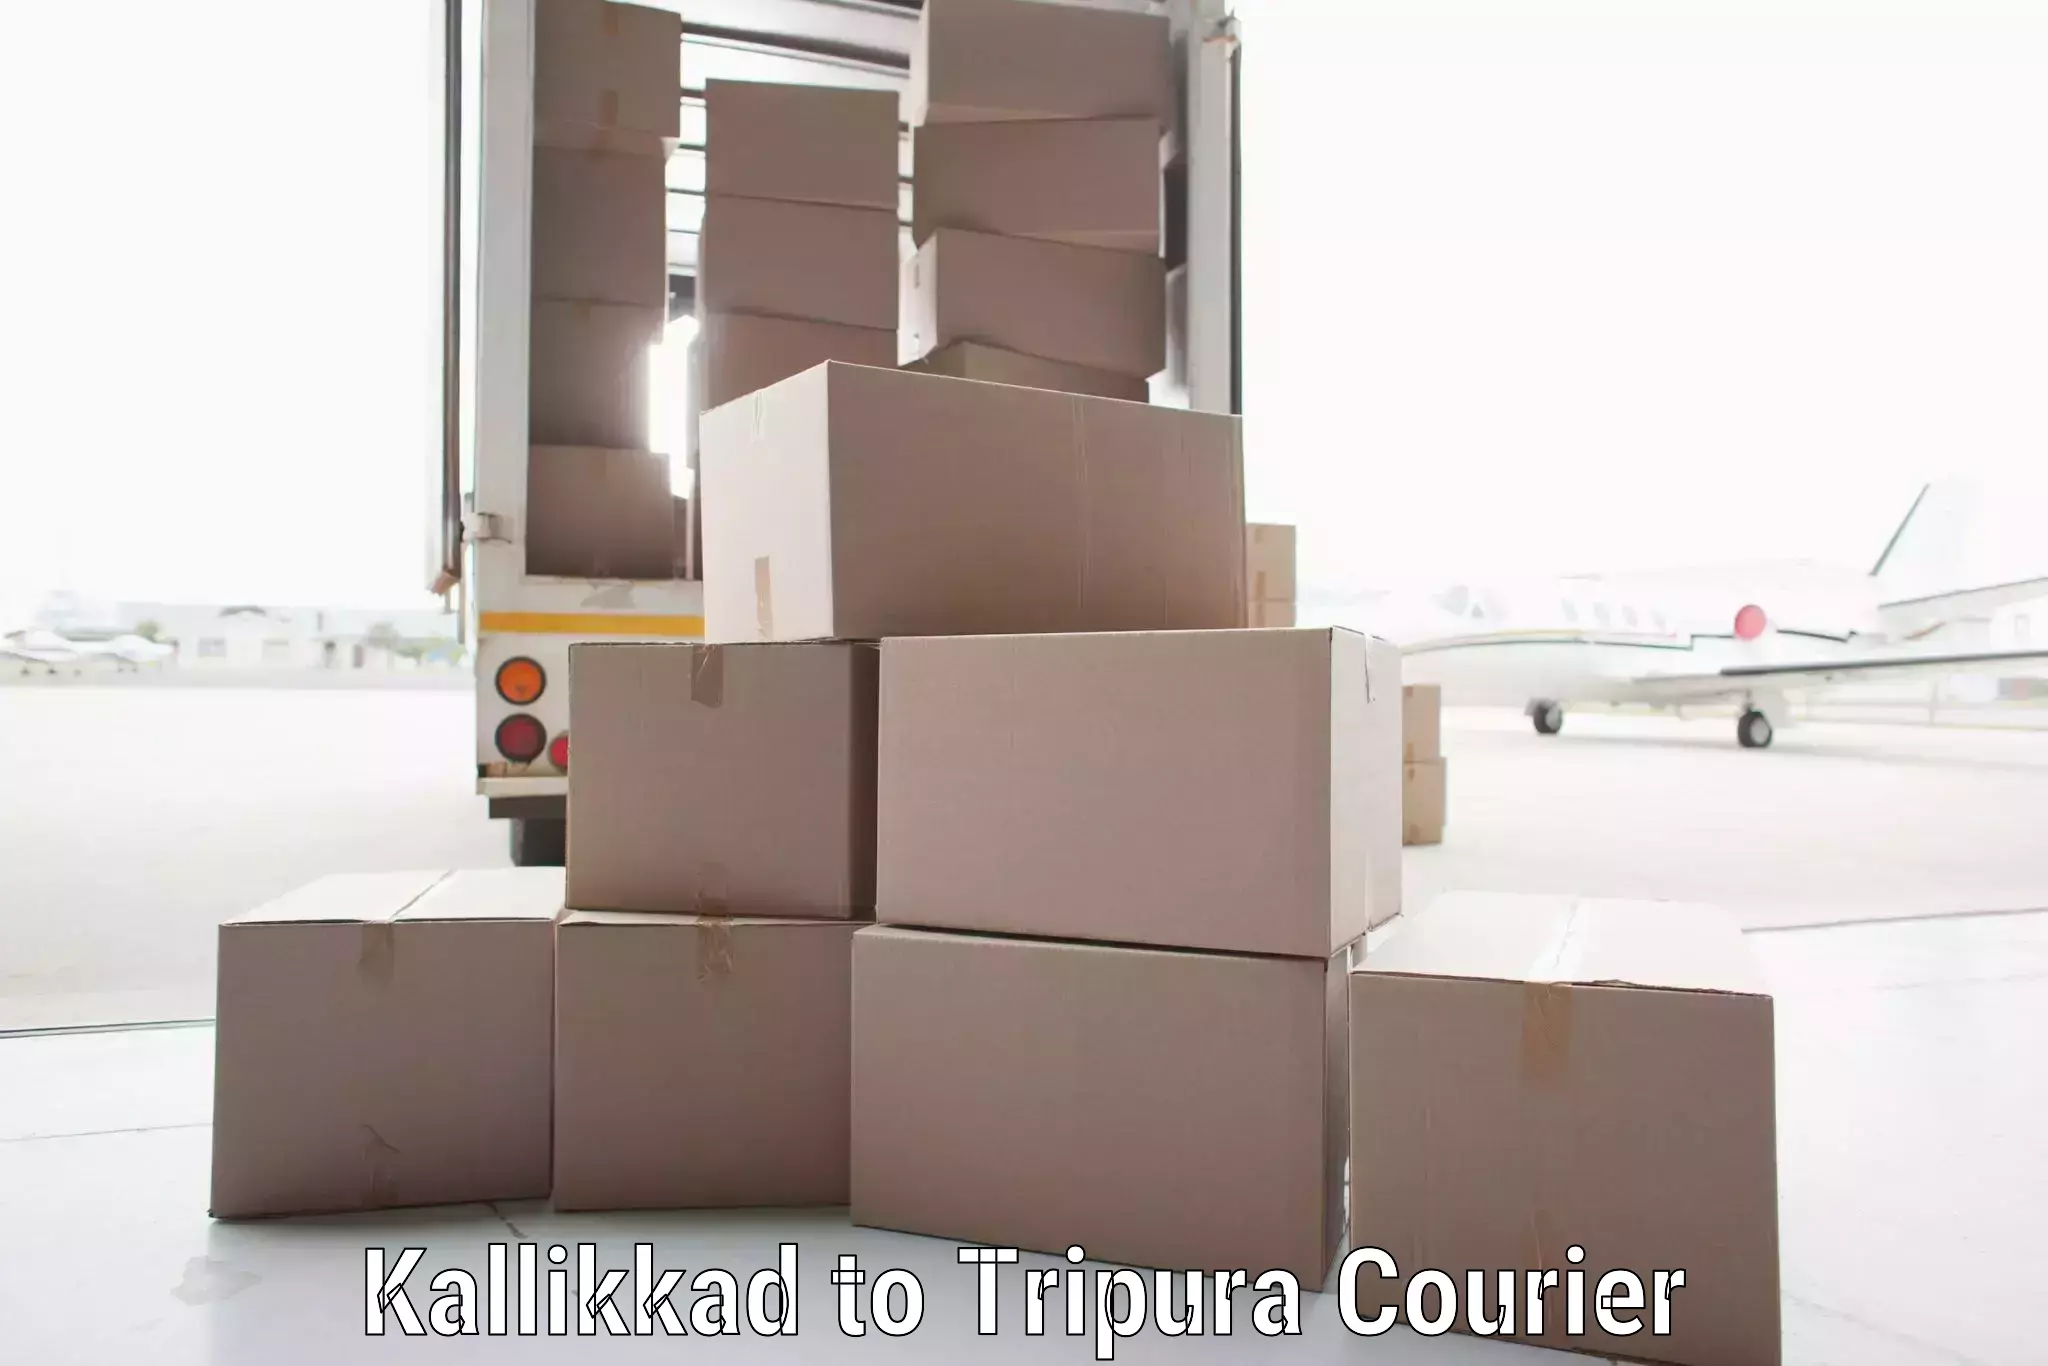 State-of-the-art courier technology Kallikkad to Teliamura